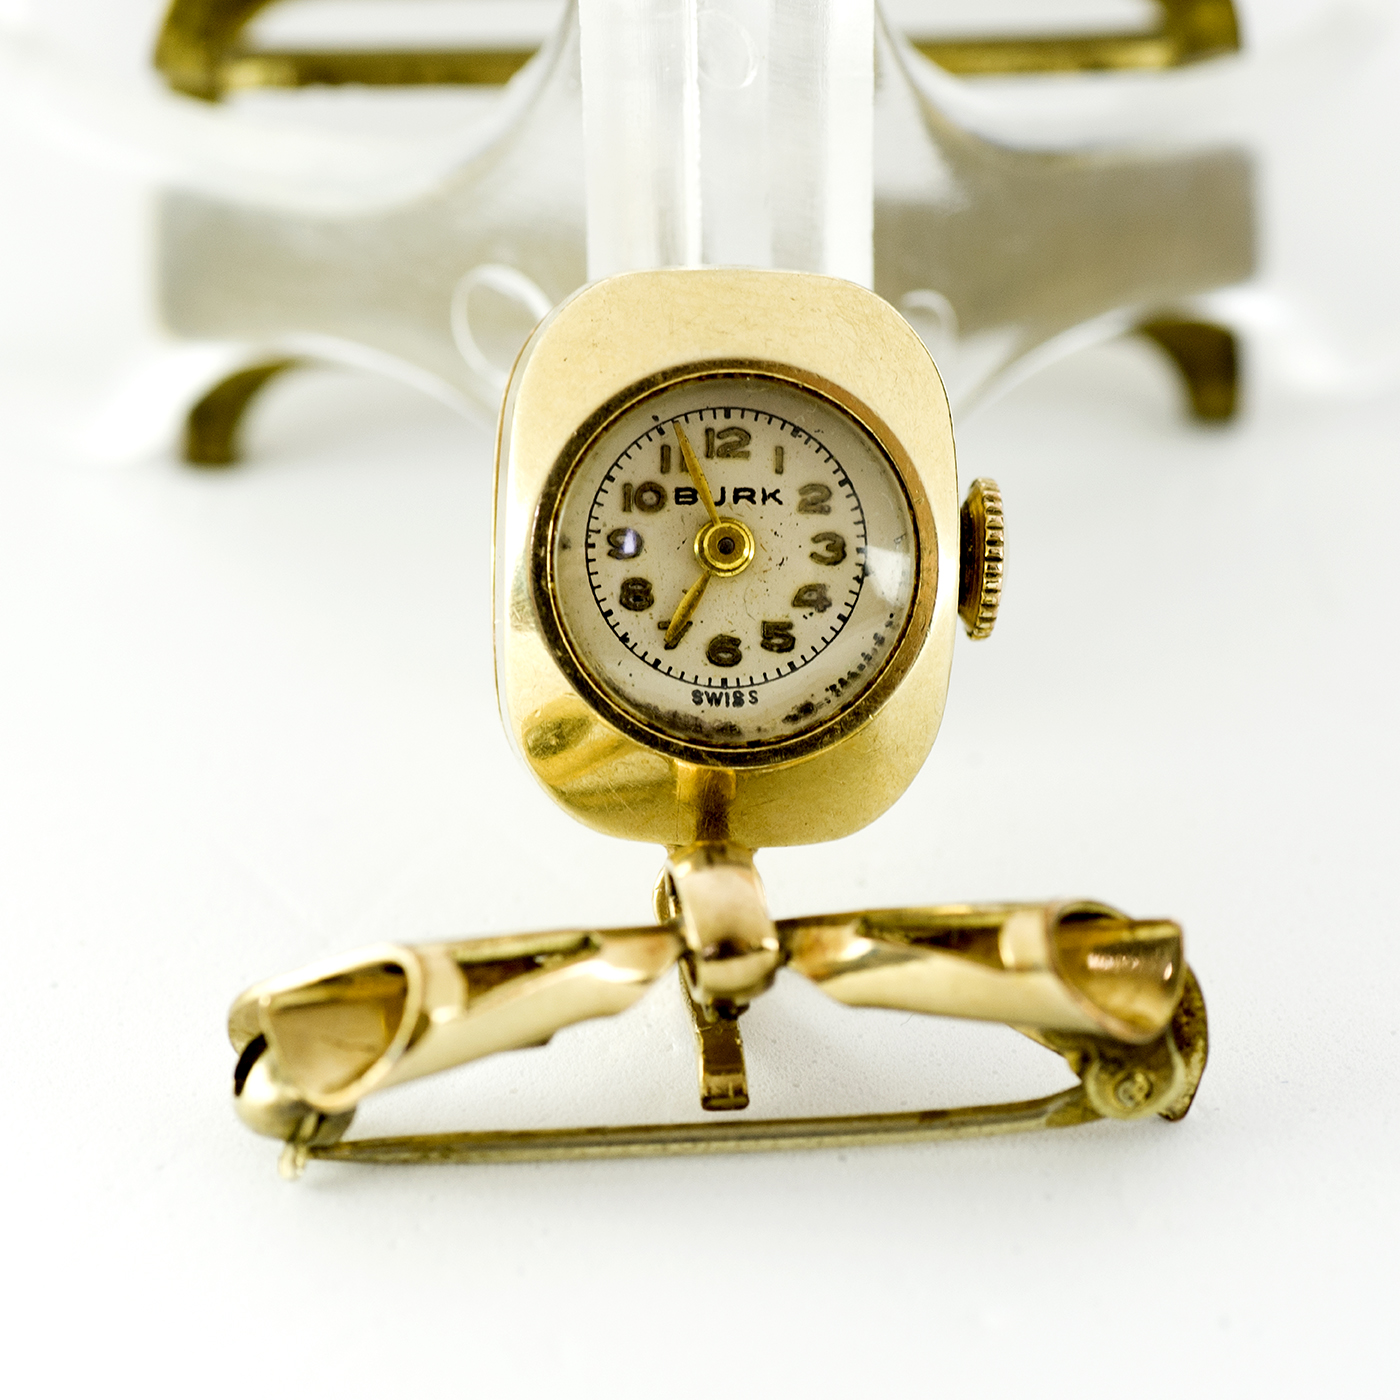 BURK-WATON Co. Reloj de Colgar, lepine y remontoir. Suiza, ca. 1930